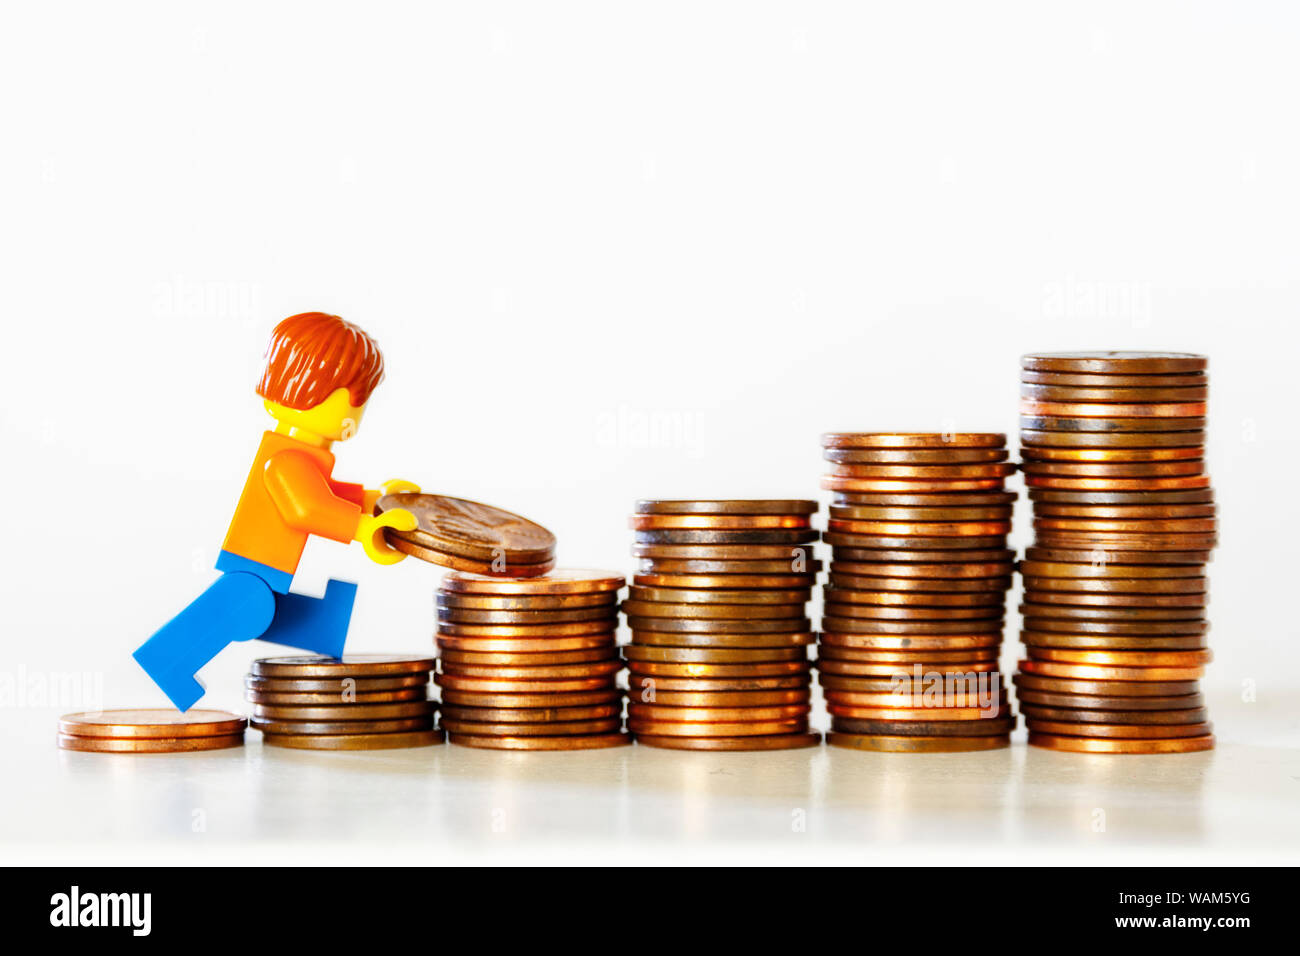 Concetto di risparmio di denaro - una figurina giocattolo che trasporta le monete su una pila di monete. Foto Stock